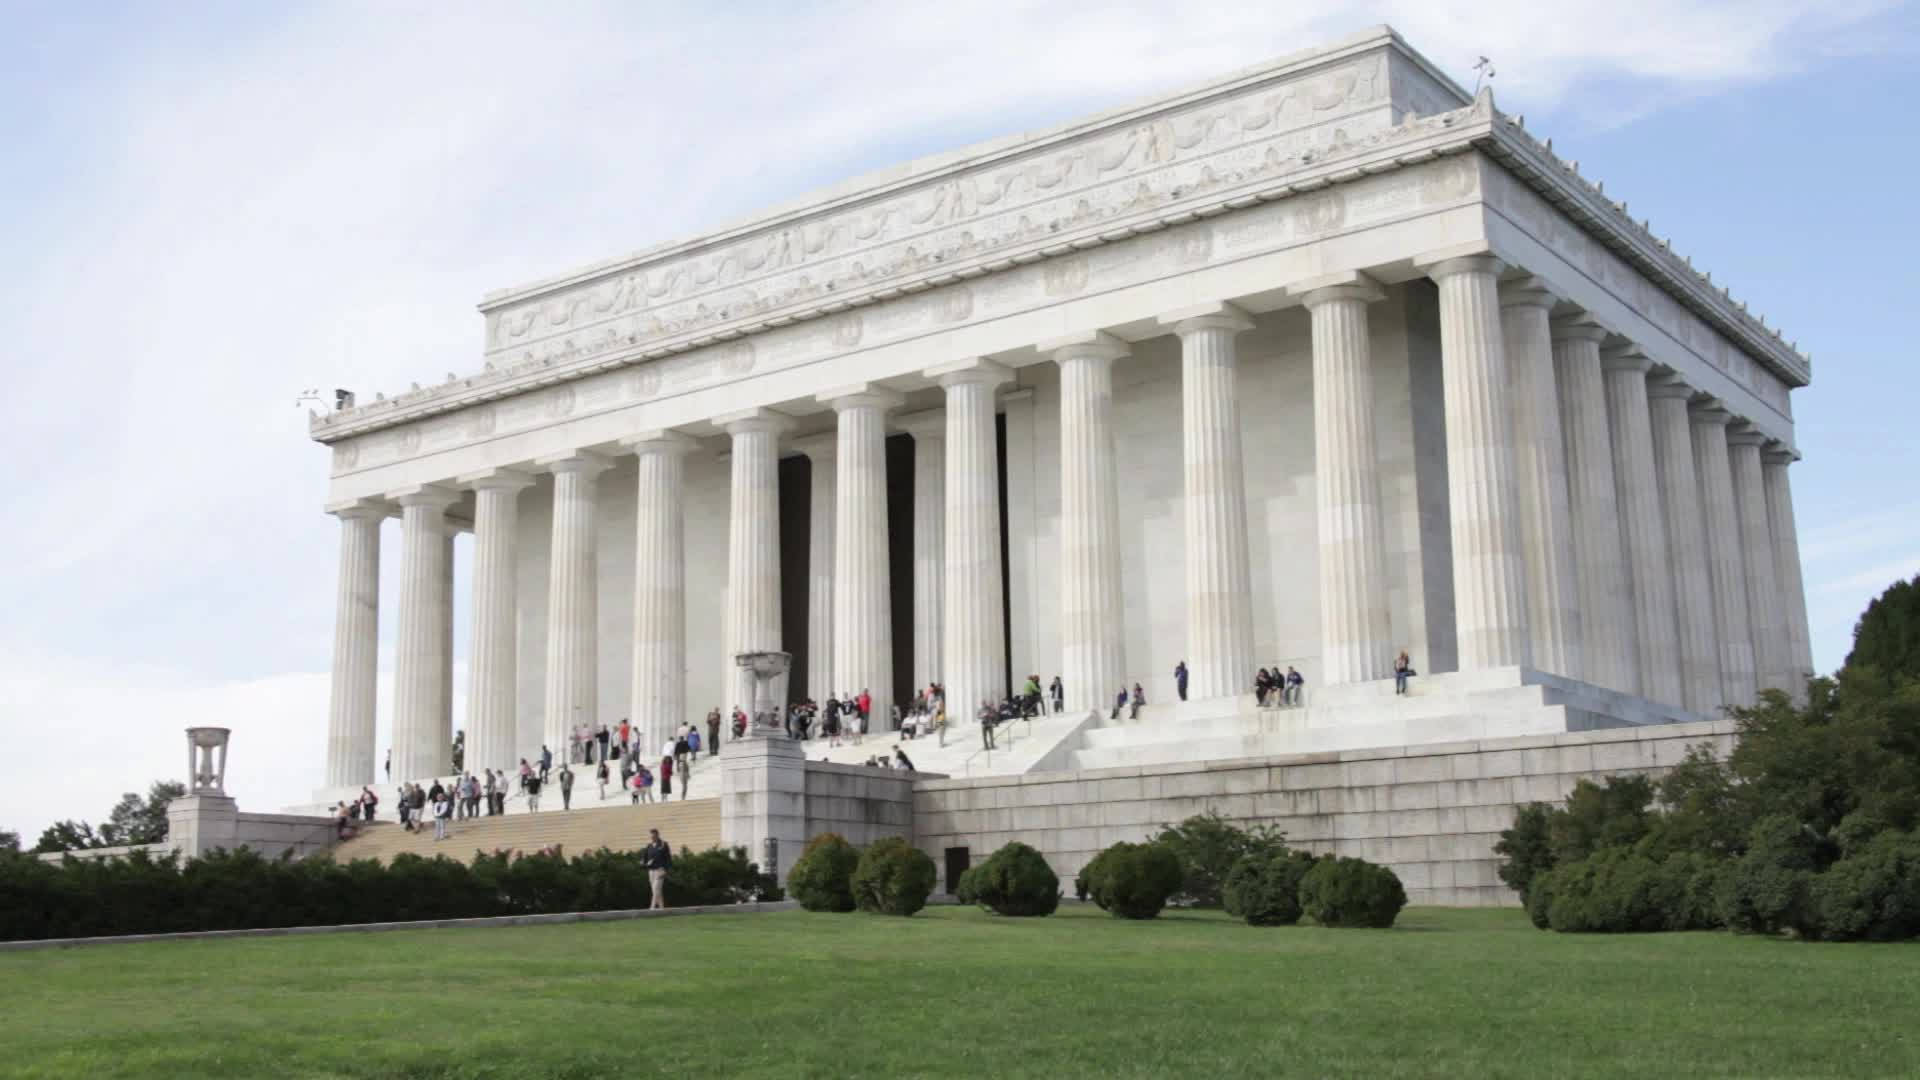 Leutebesuchen Das Lincoln Monument. Wallpaper